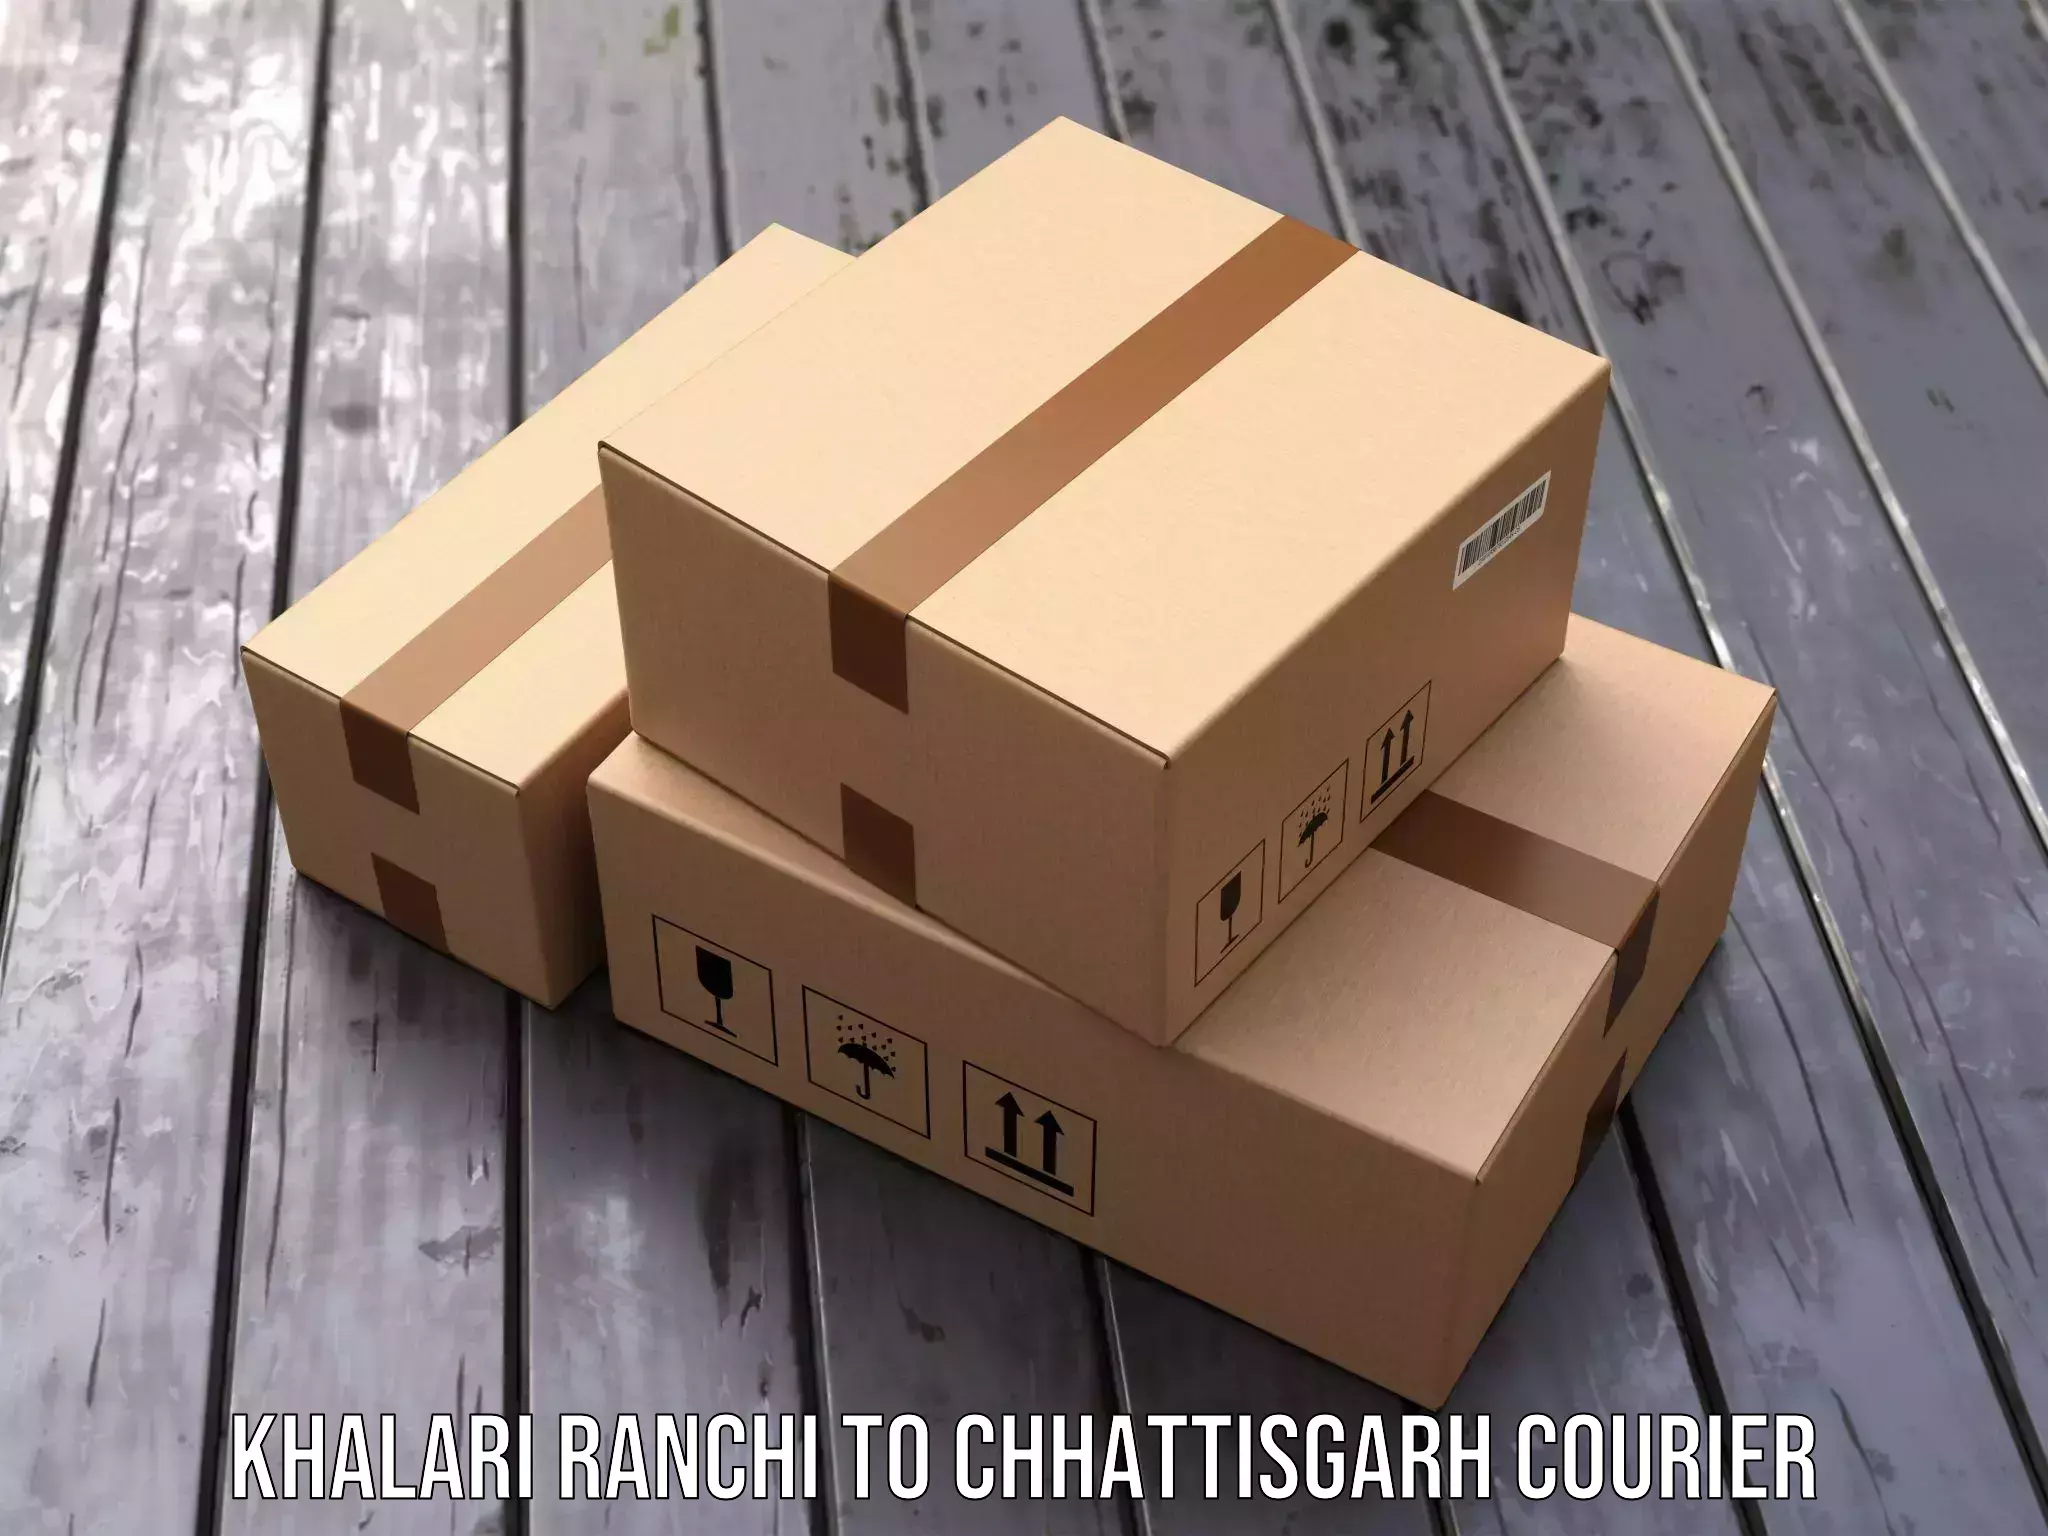 Express logistics providers Khalari Ranchi to Chhattisgarh